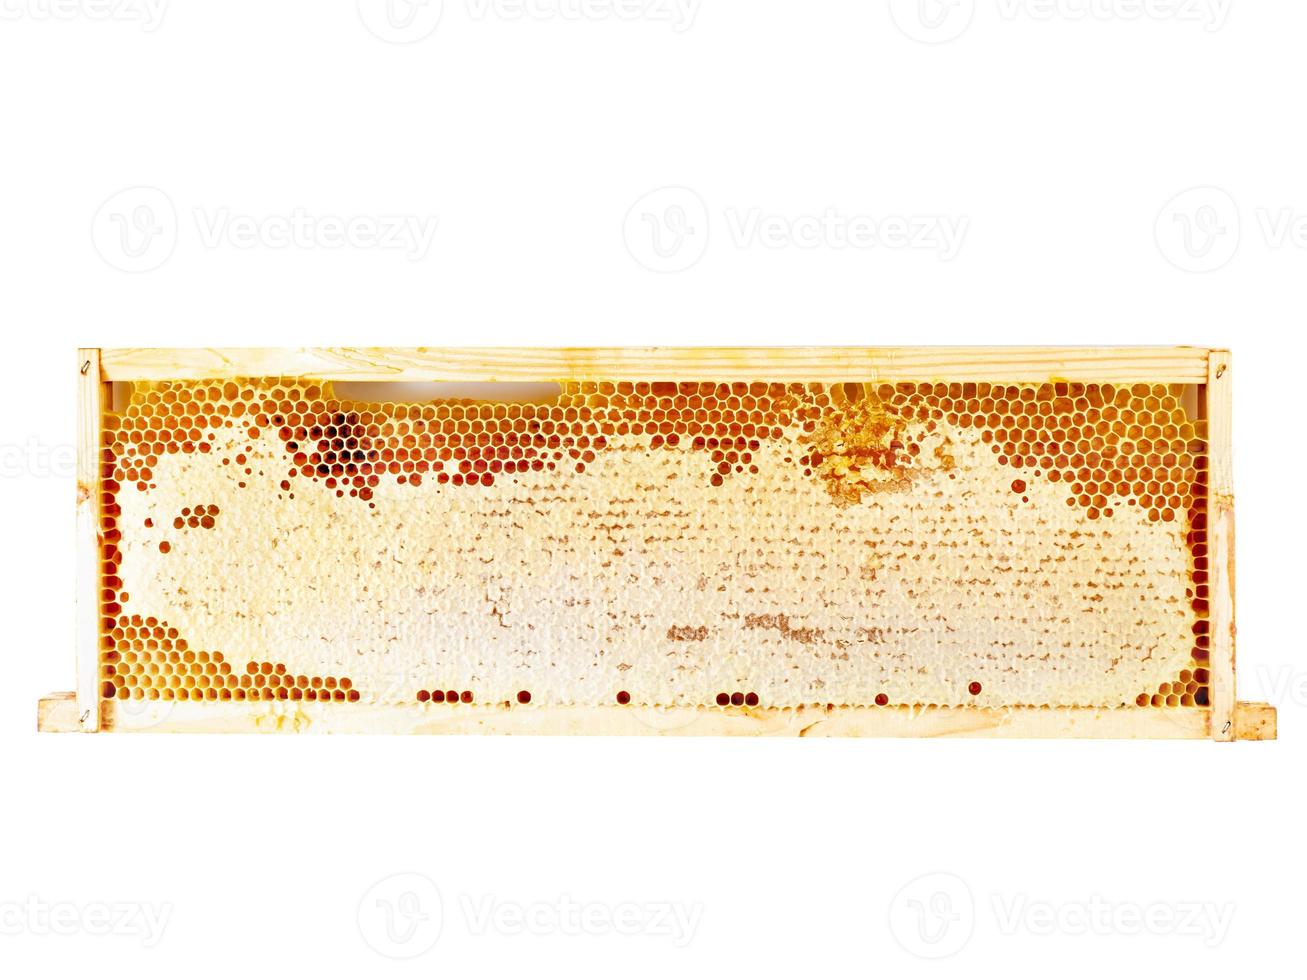 primer plano de panal de abeja, miel dulce goteante fibrosa fresca, aislado, fondo blanco, vista superior foto